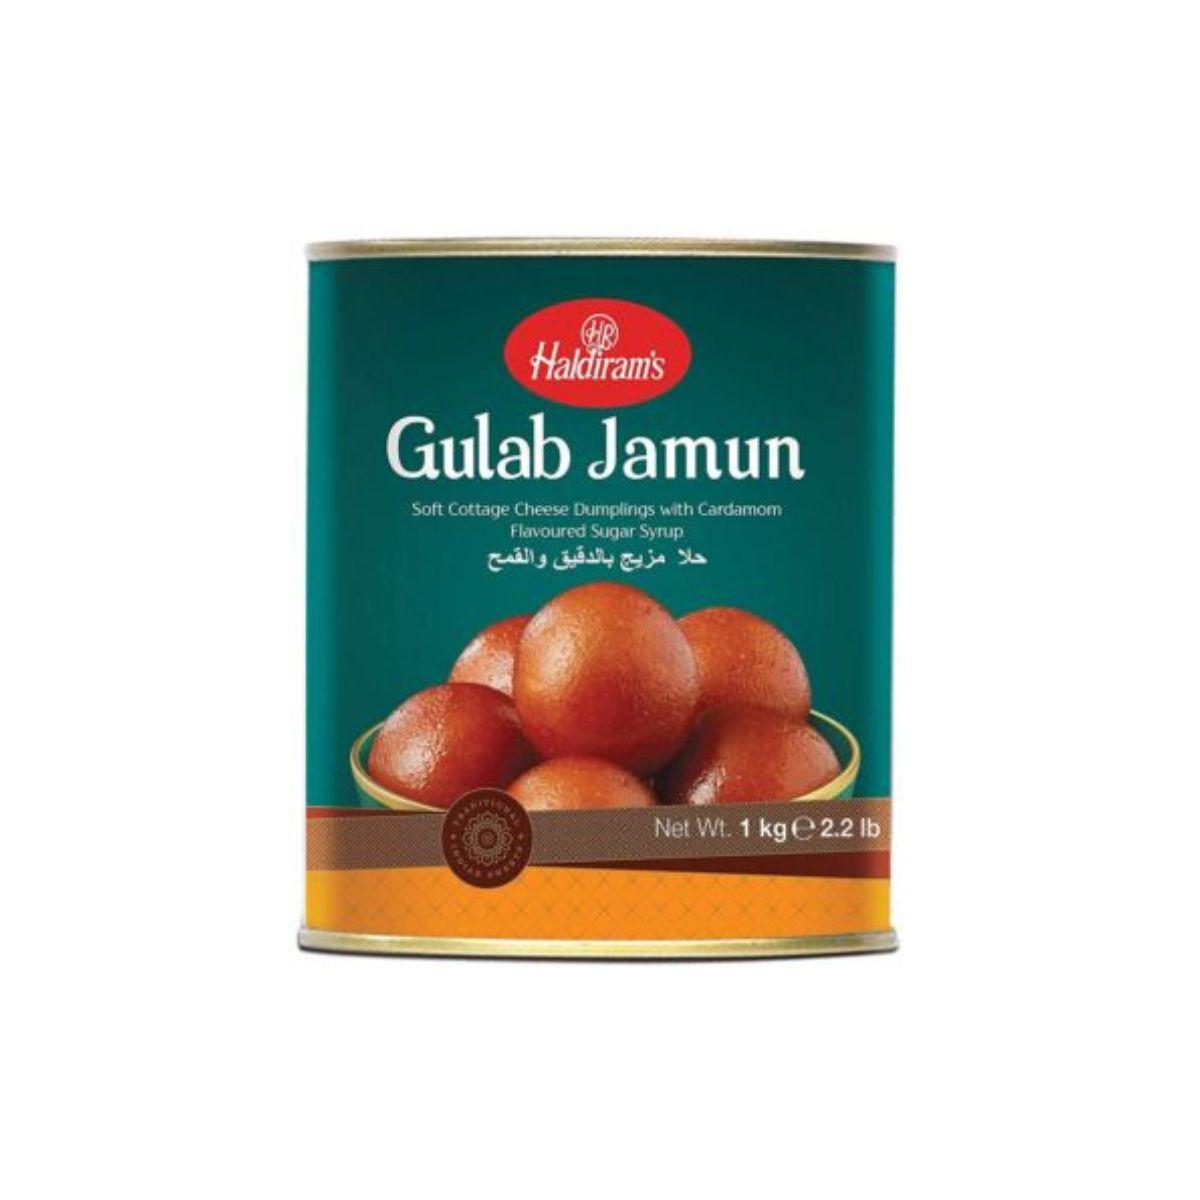 Haldiram's Gulab Jamun - Cheese Curd Dumplings With Cardamom Flavoured Sugar Syrup - 1kg